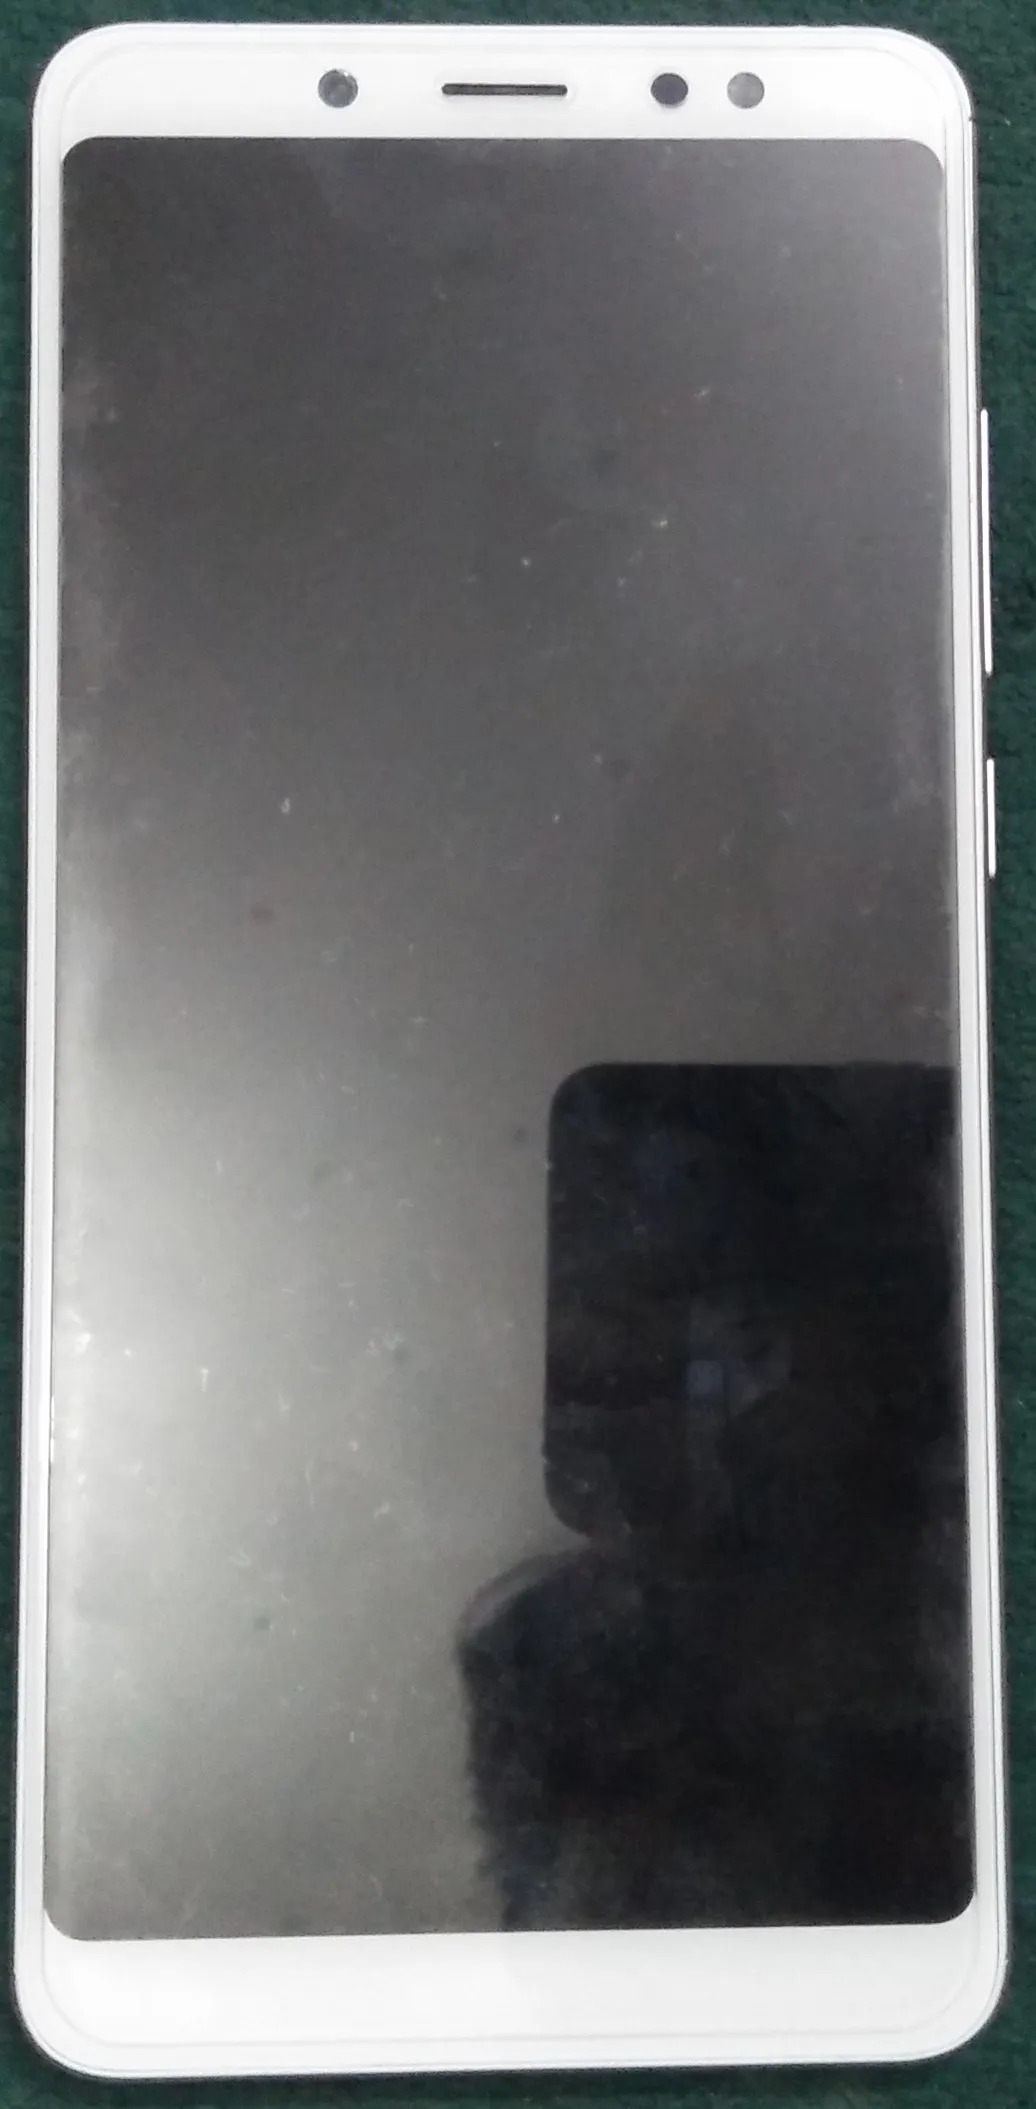 Xiaomi Redmi Note 5 Pro (Global Version) in Lush Condition - photo 2